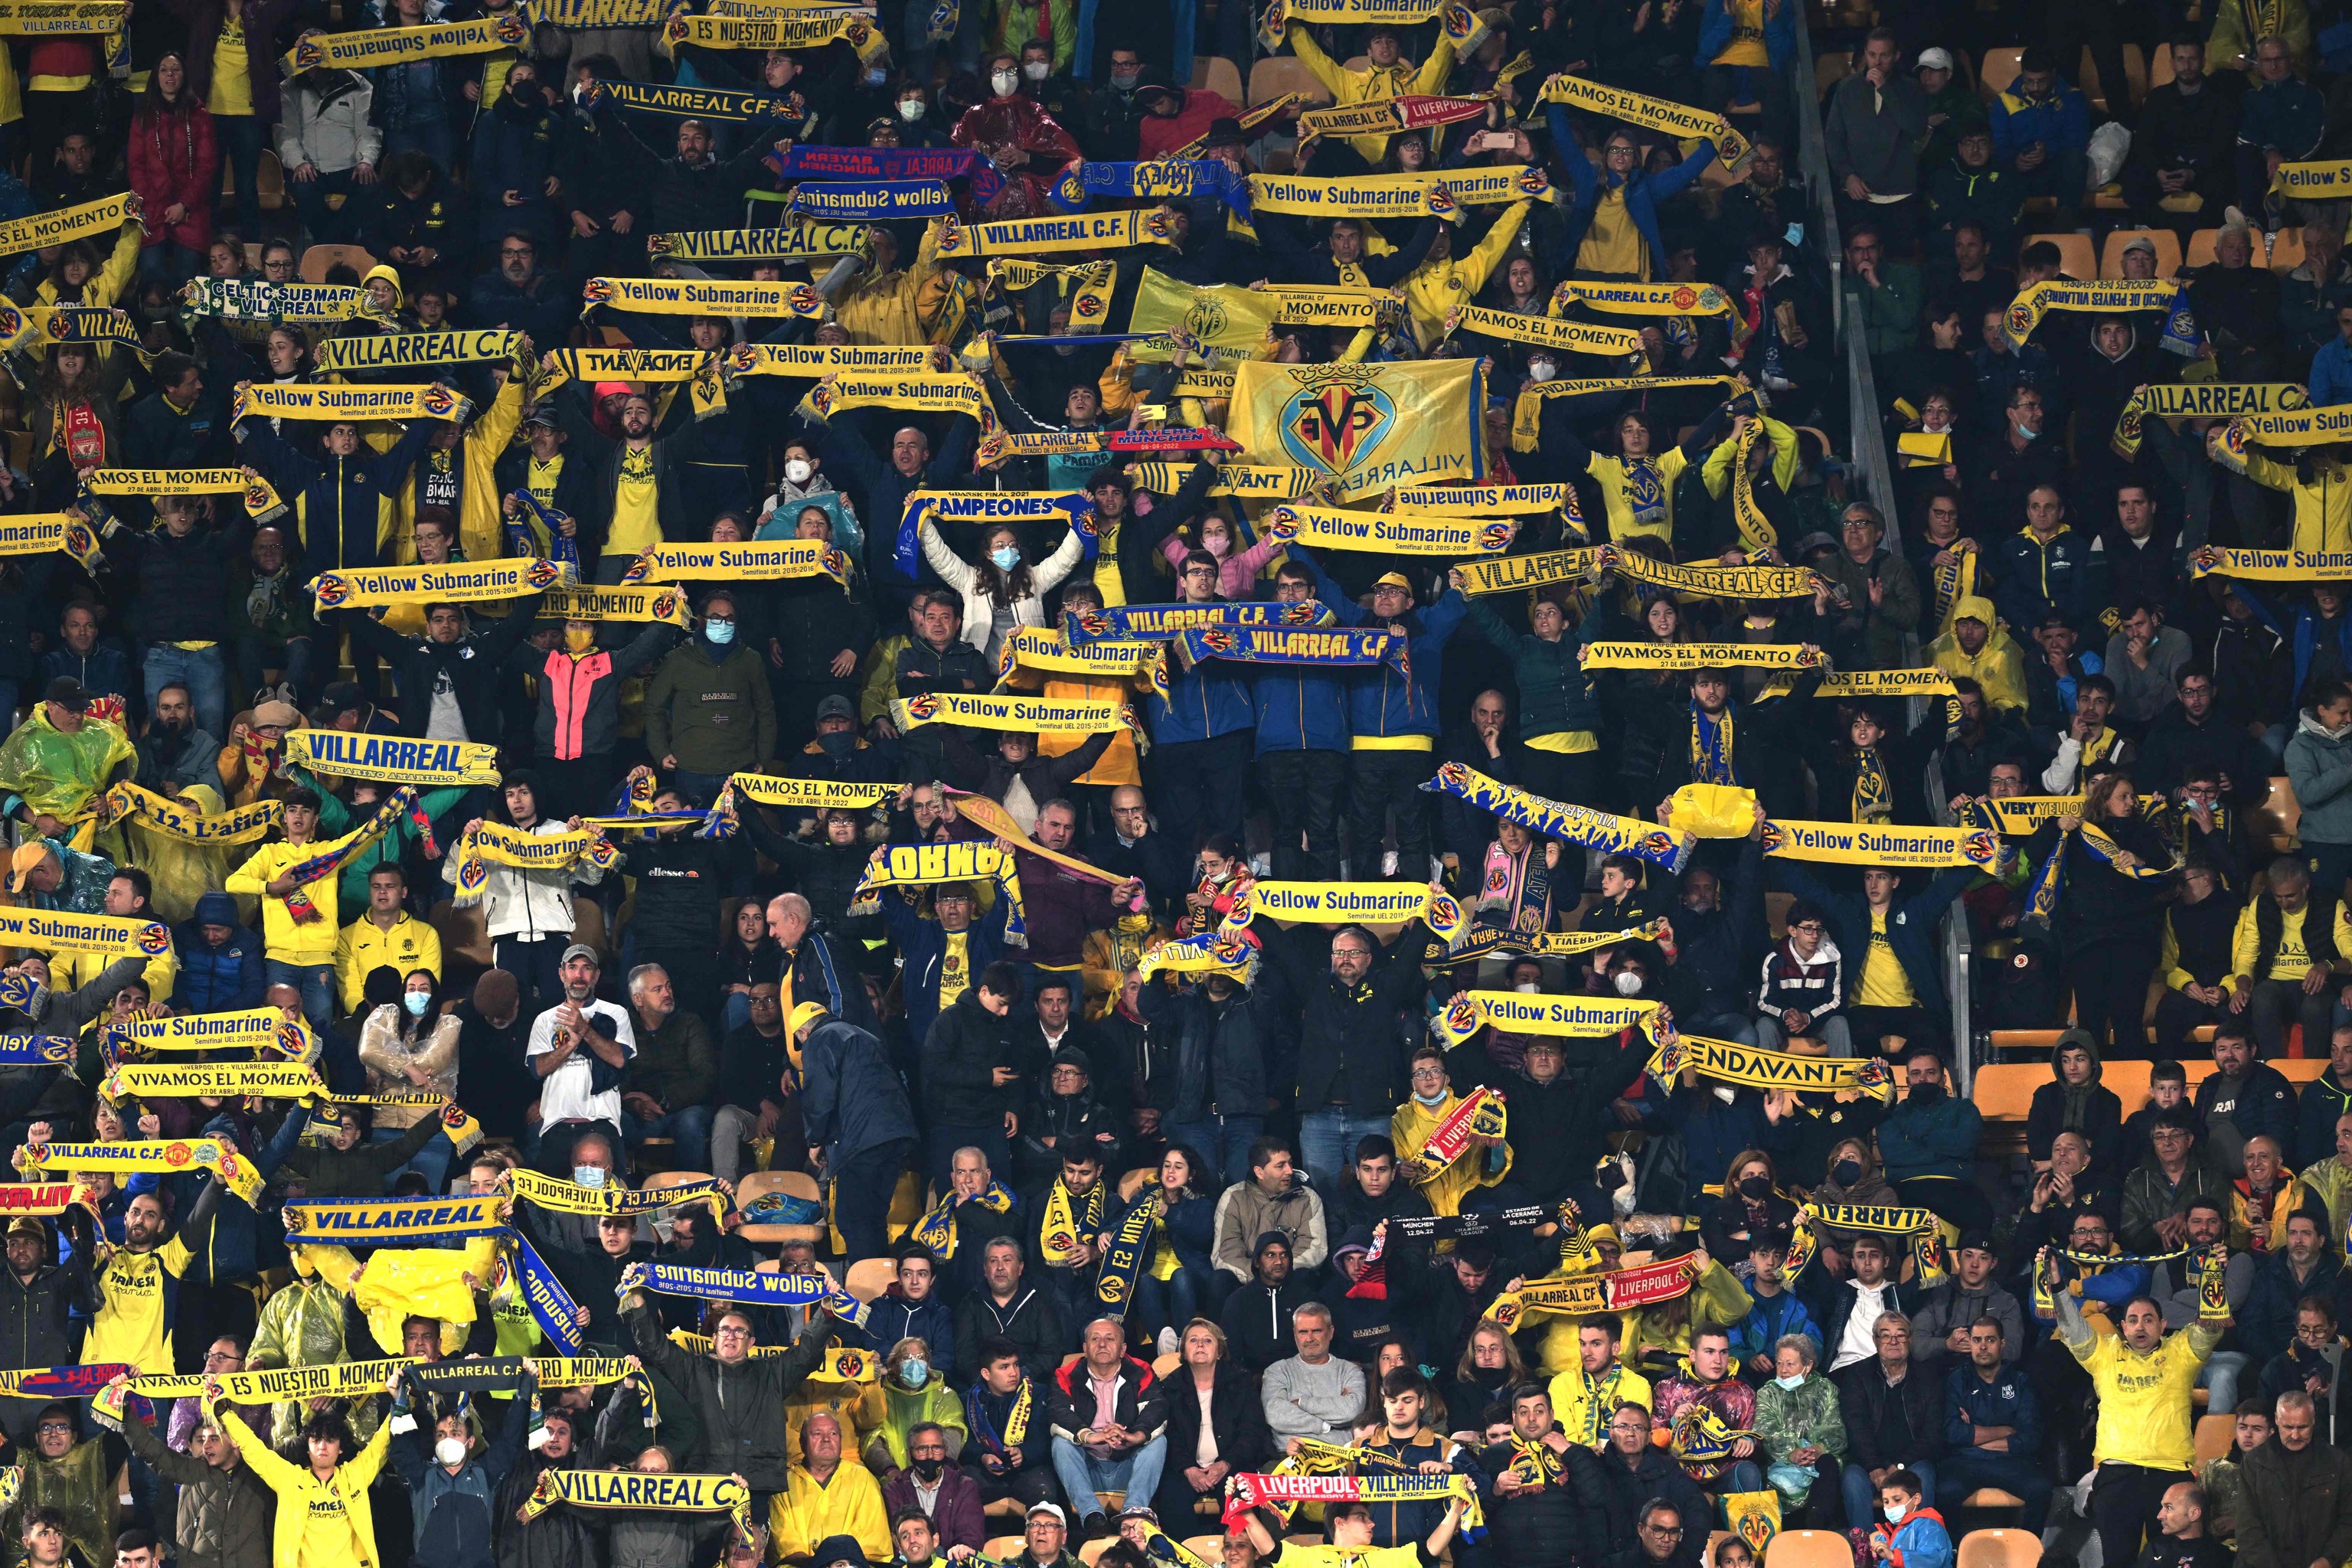 Los seguidores del Villarreal, este martes noche, en las gradas del Estadio de la Cermica, apoyando al Villarreal frente al Liverpool.